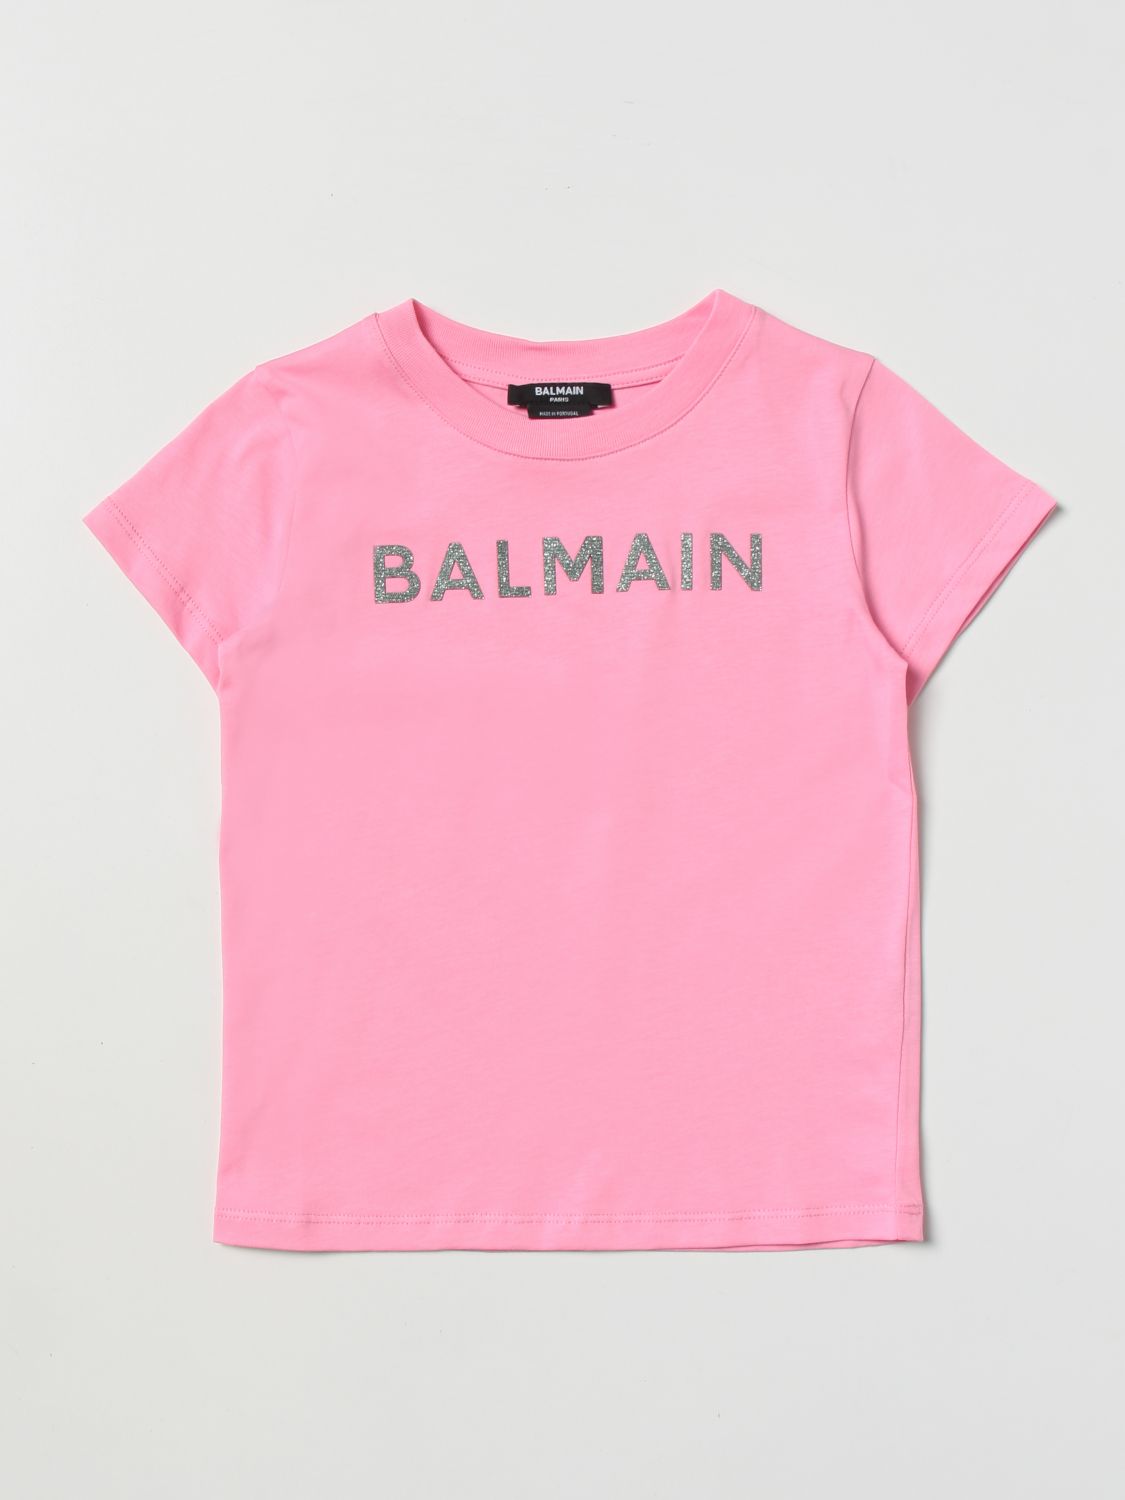 BALMAIN T-SHIRT BALMAIN KIDS KIDS COLOR PINK,D82344010